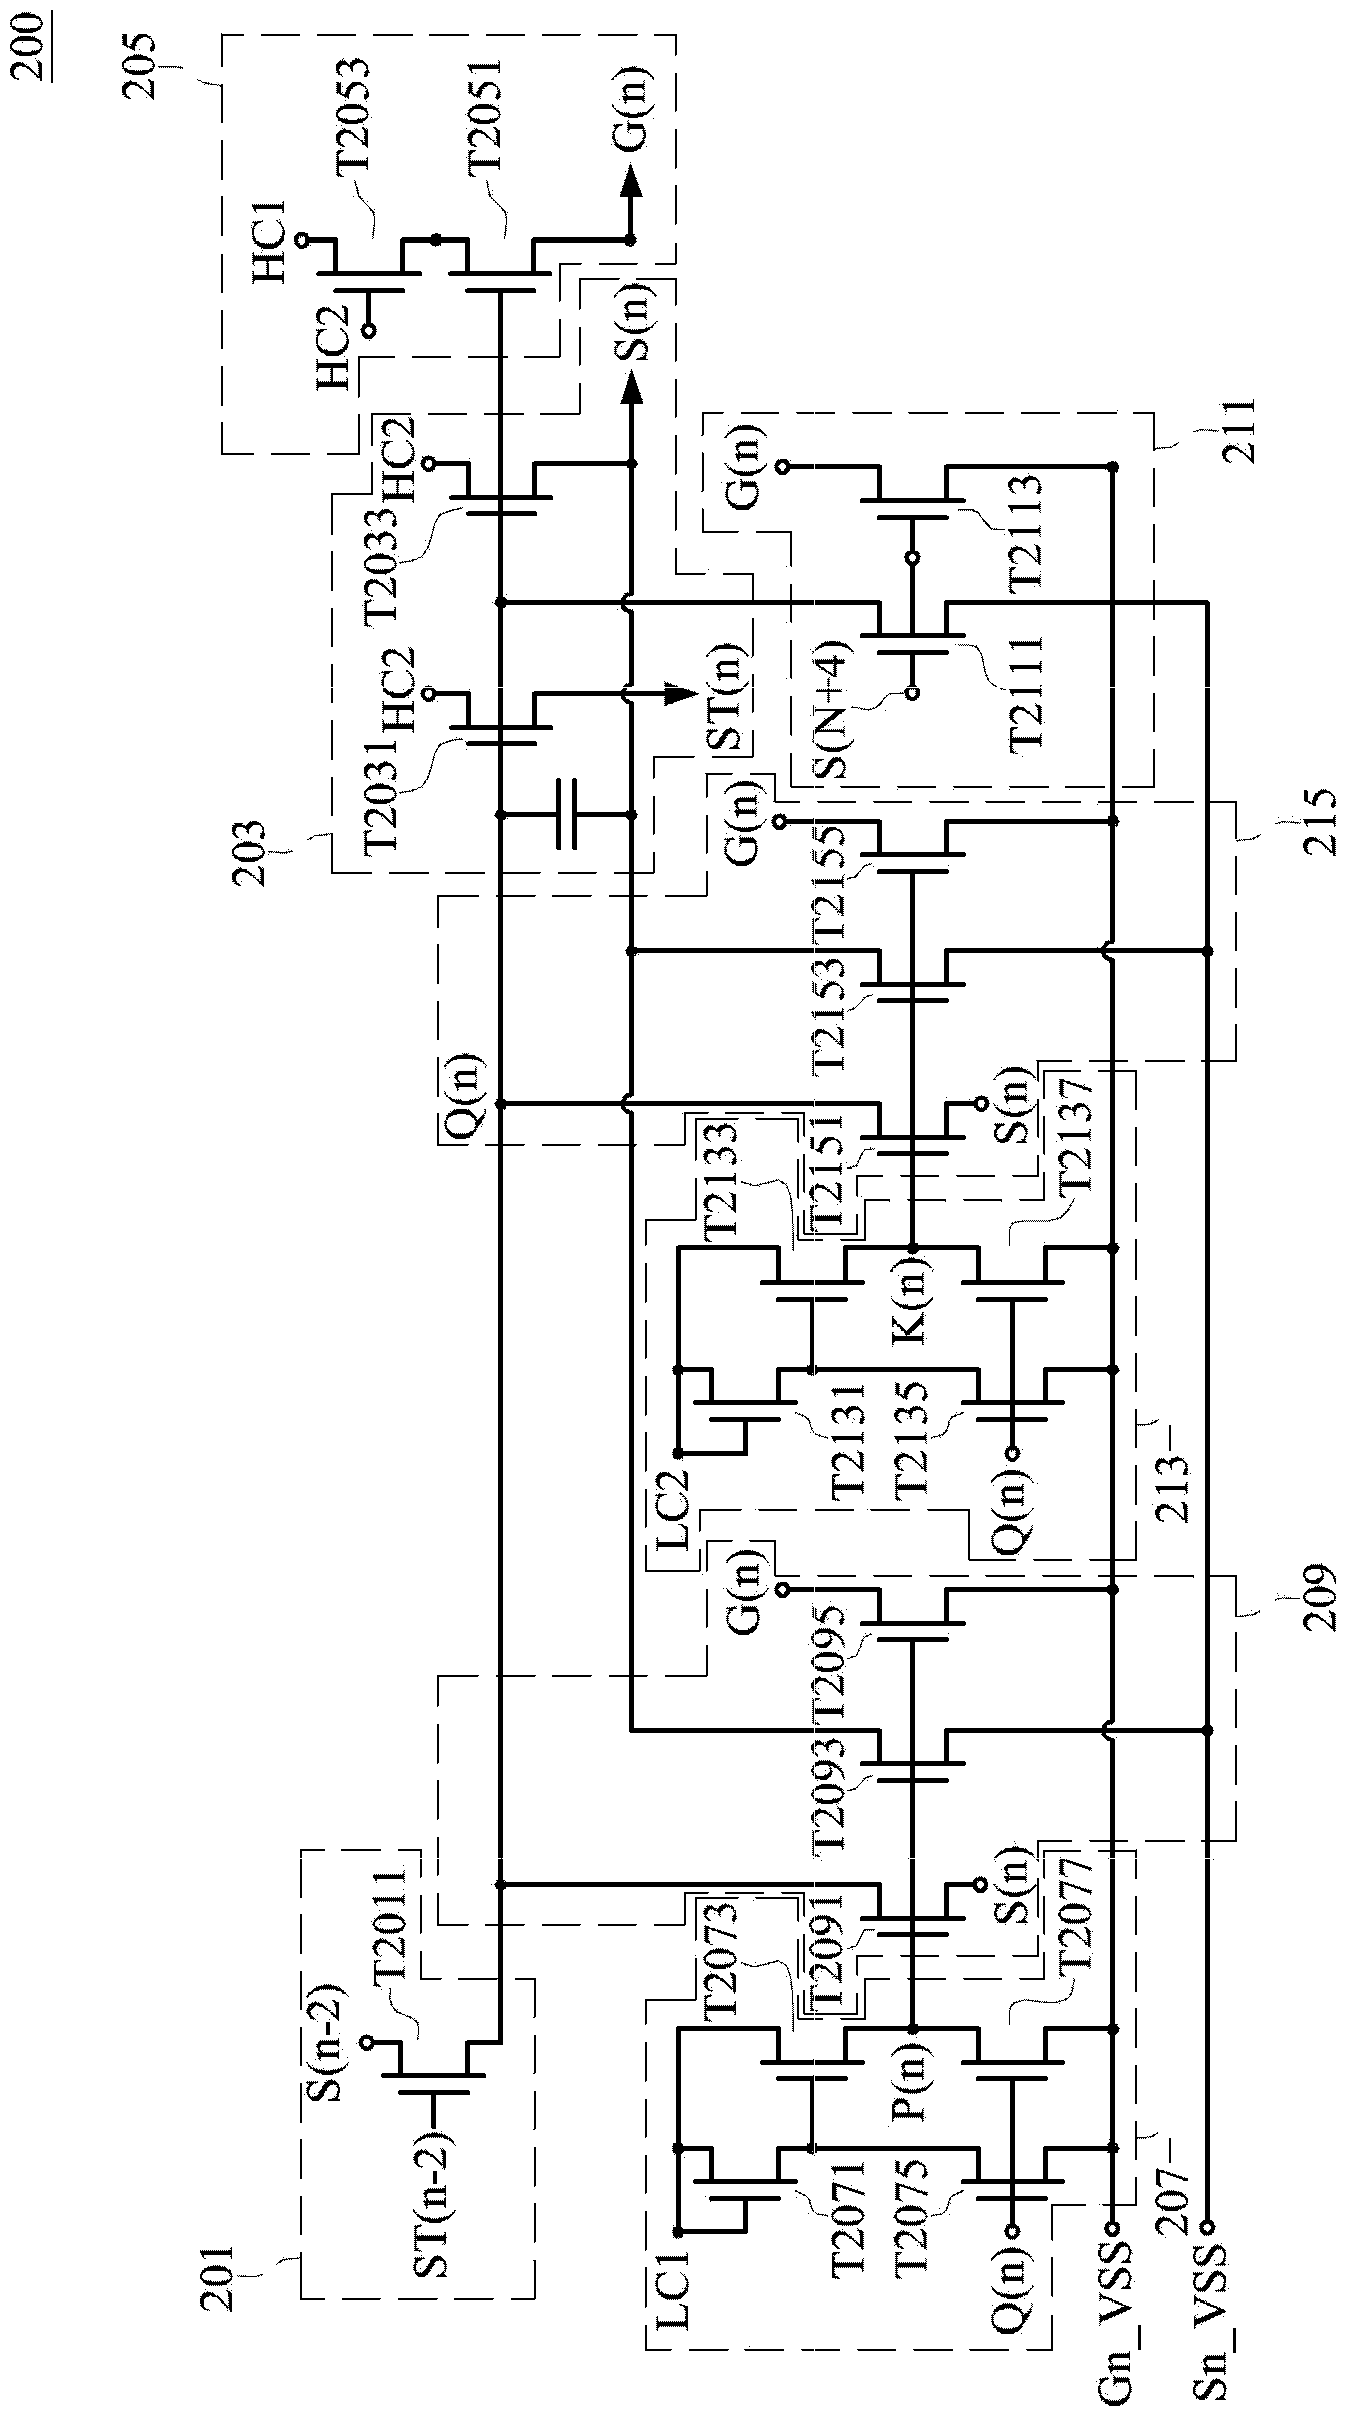 Shifting register circuit